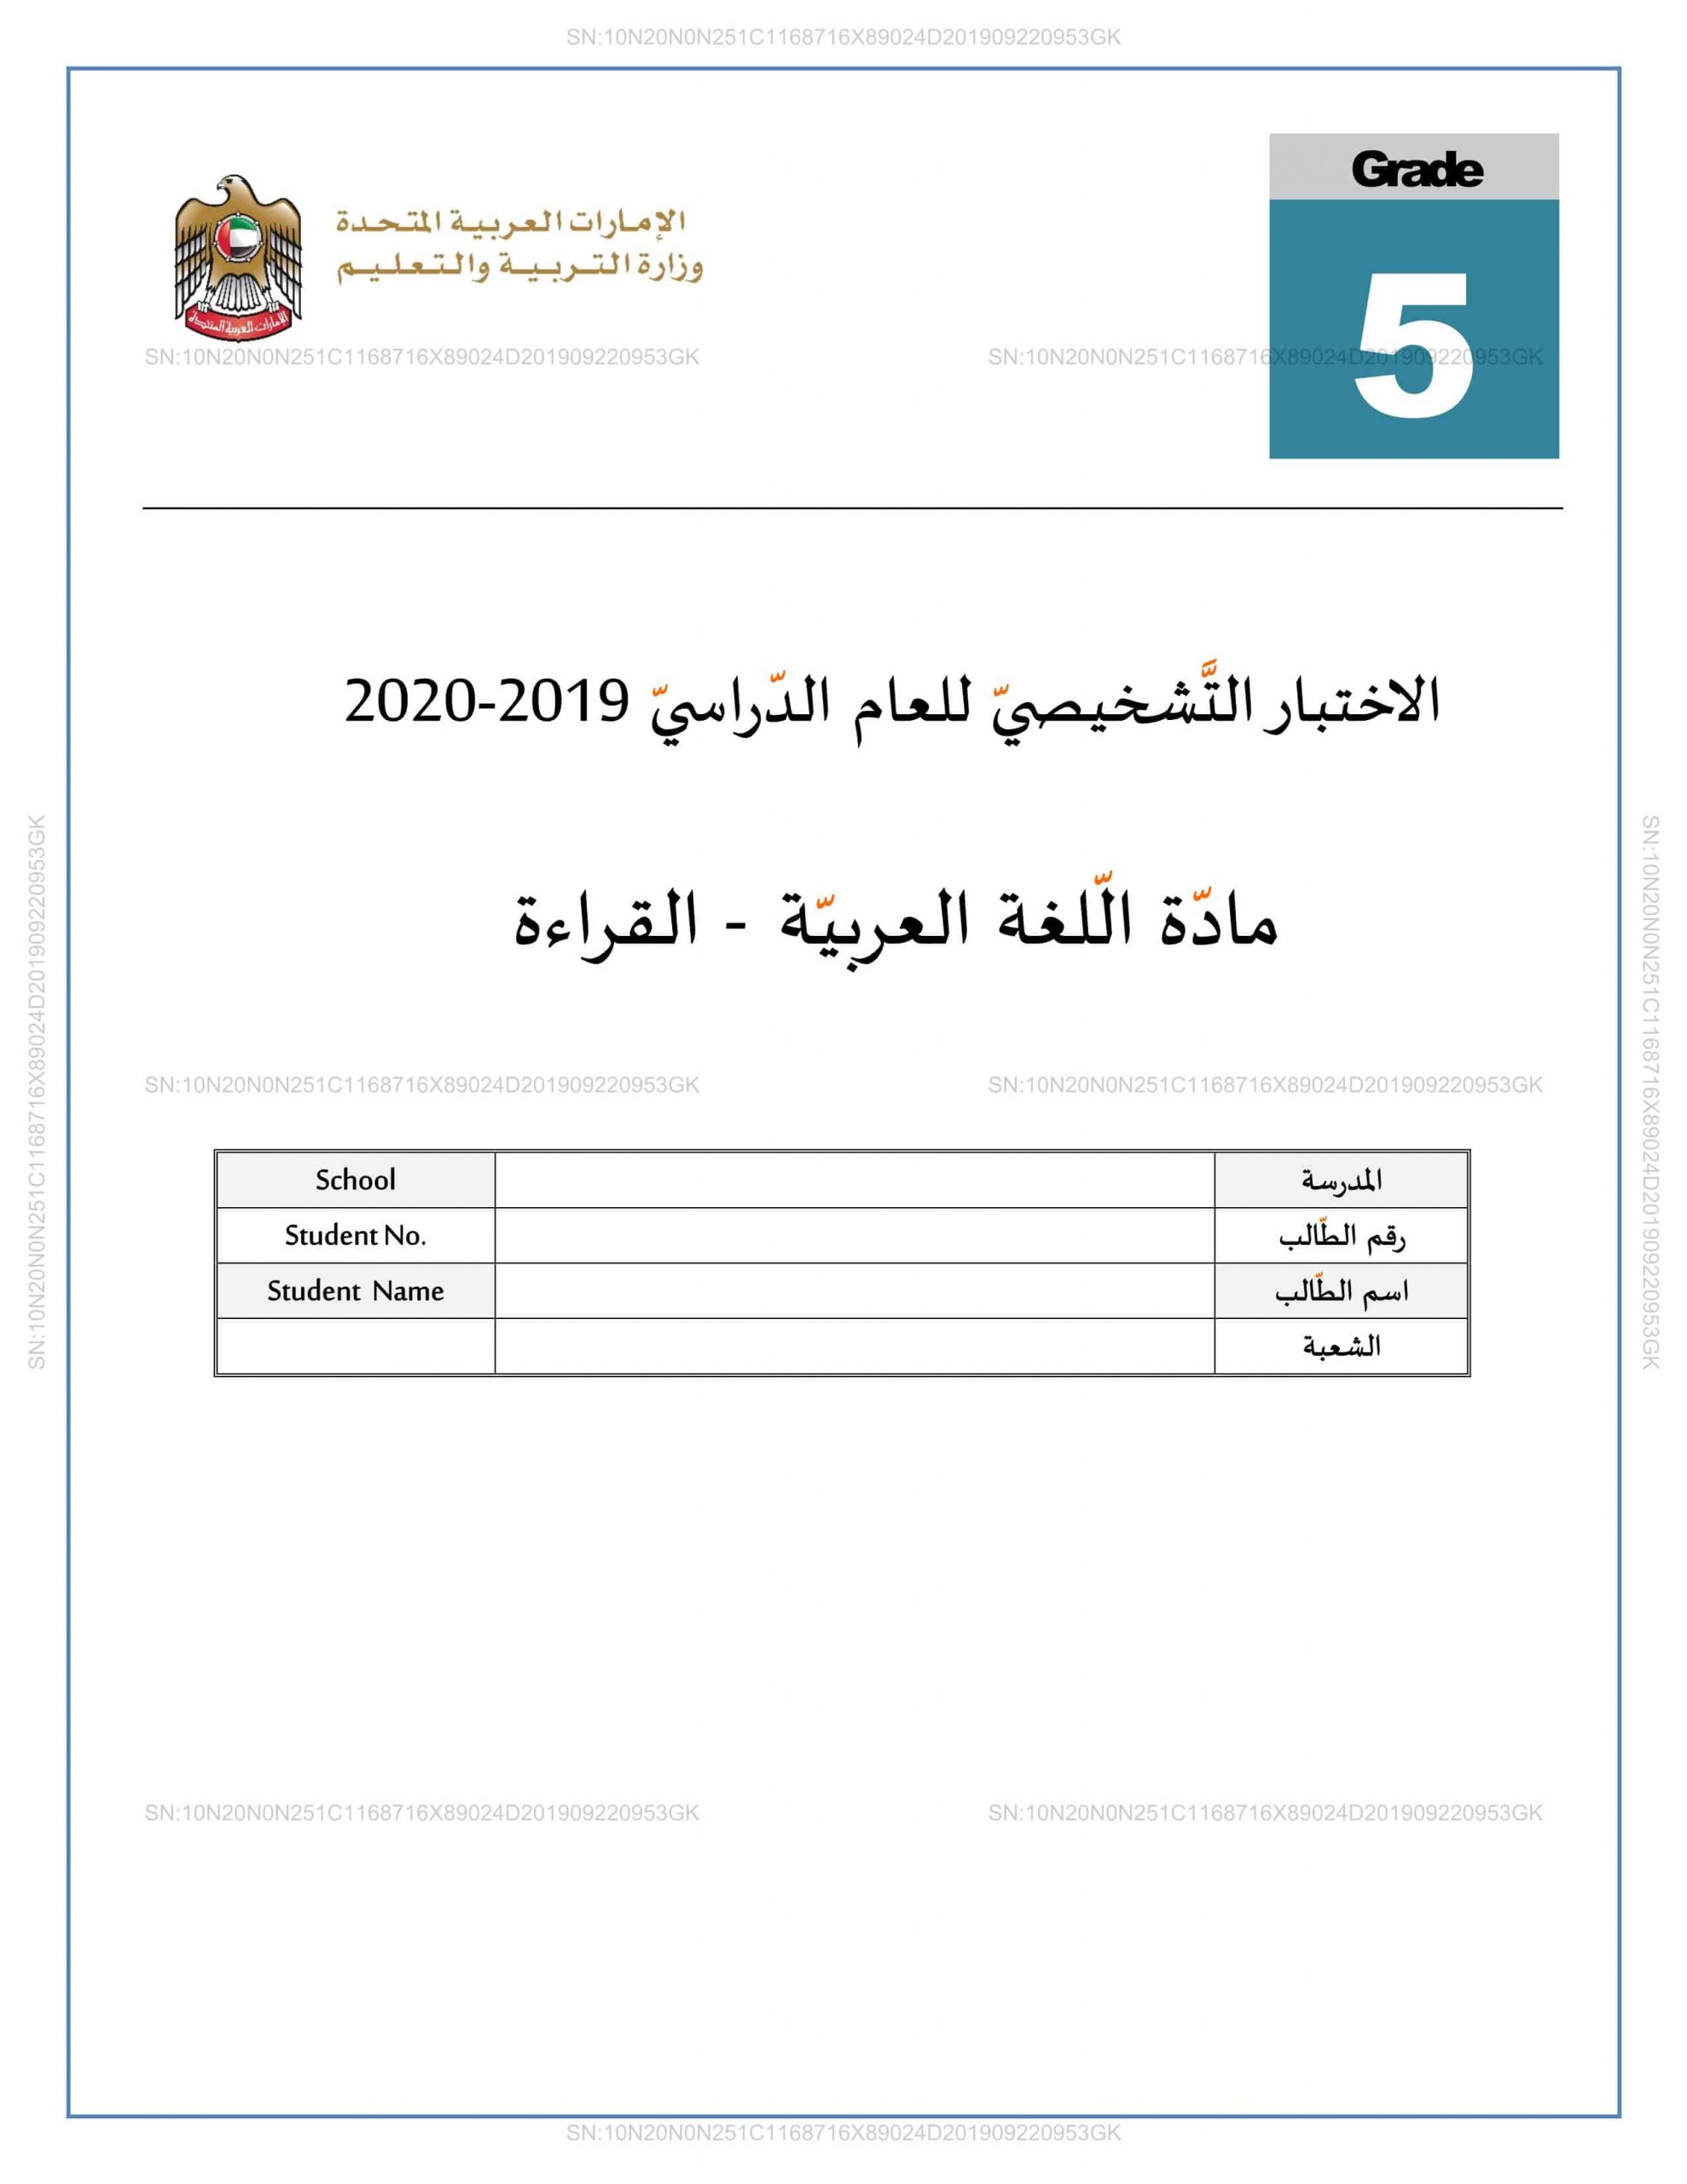 حل اختبار التشخيصي القراءة 2019-2020 الصف الخامس مادة اللغة العربية 